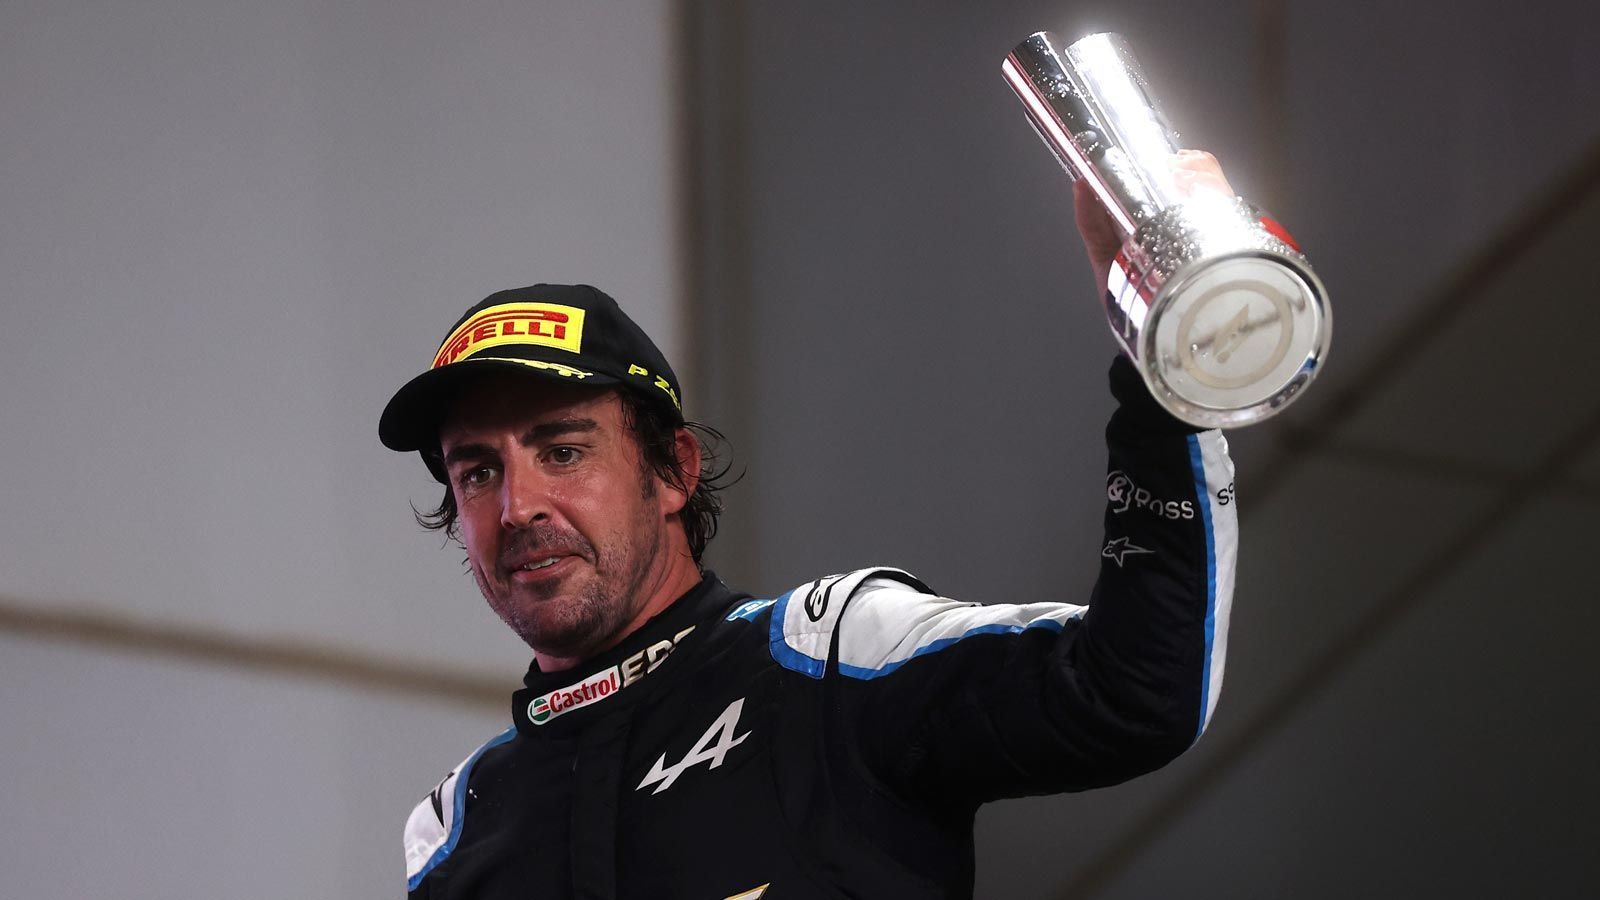 
                <strong>Fernando Alonso (Alpine)</strong><br>
                Saison 2021: 81 Punkte, 10. Platz der GesamtwertungNach zwei Jahren Formel 1-Abstinenz kehrte Fernando Alonso in die "Königsklasse des Motorsports" zurück. Zu Beginn der Saison tat sich der 40-Jährige schwer, jedoch konnte er sich im laufe des Jahres stetig verbessern und feierte beim Großen Preis von Katar seinen ersten Podiumsplatz seit über sieben Jahren. Sein dritter Platz sorgte auch dafür, dass der Spanier seinen Teamkollegen, Esteban Ocon, schlagen konnte und die Saison als Zehnter beendete.
              